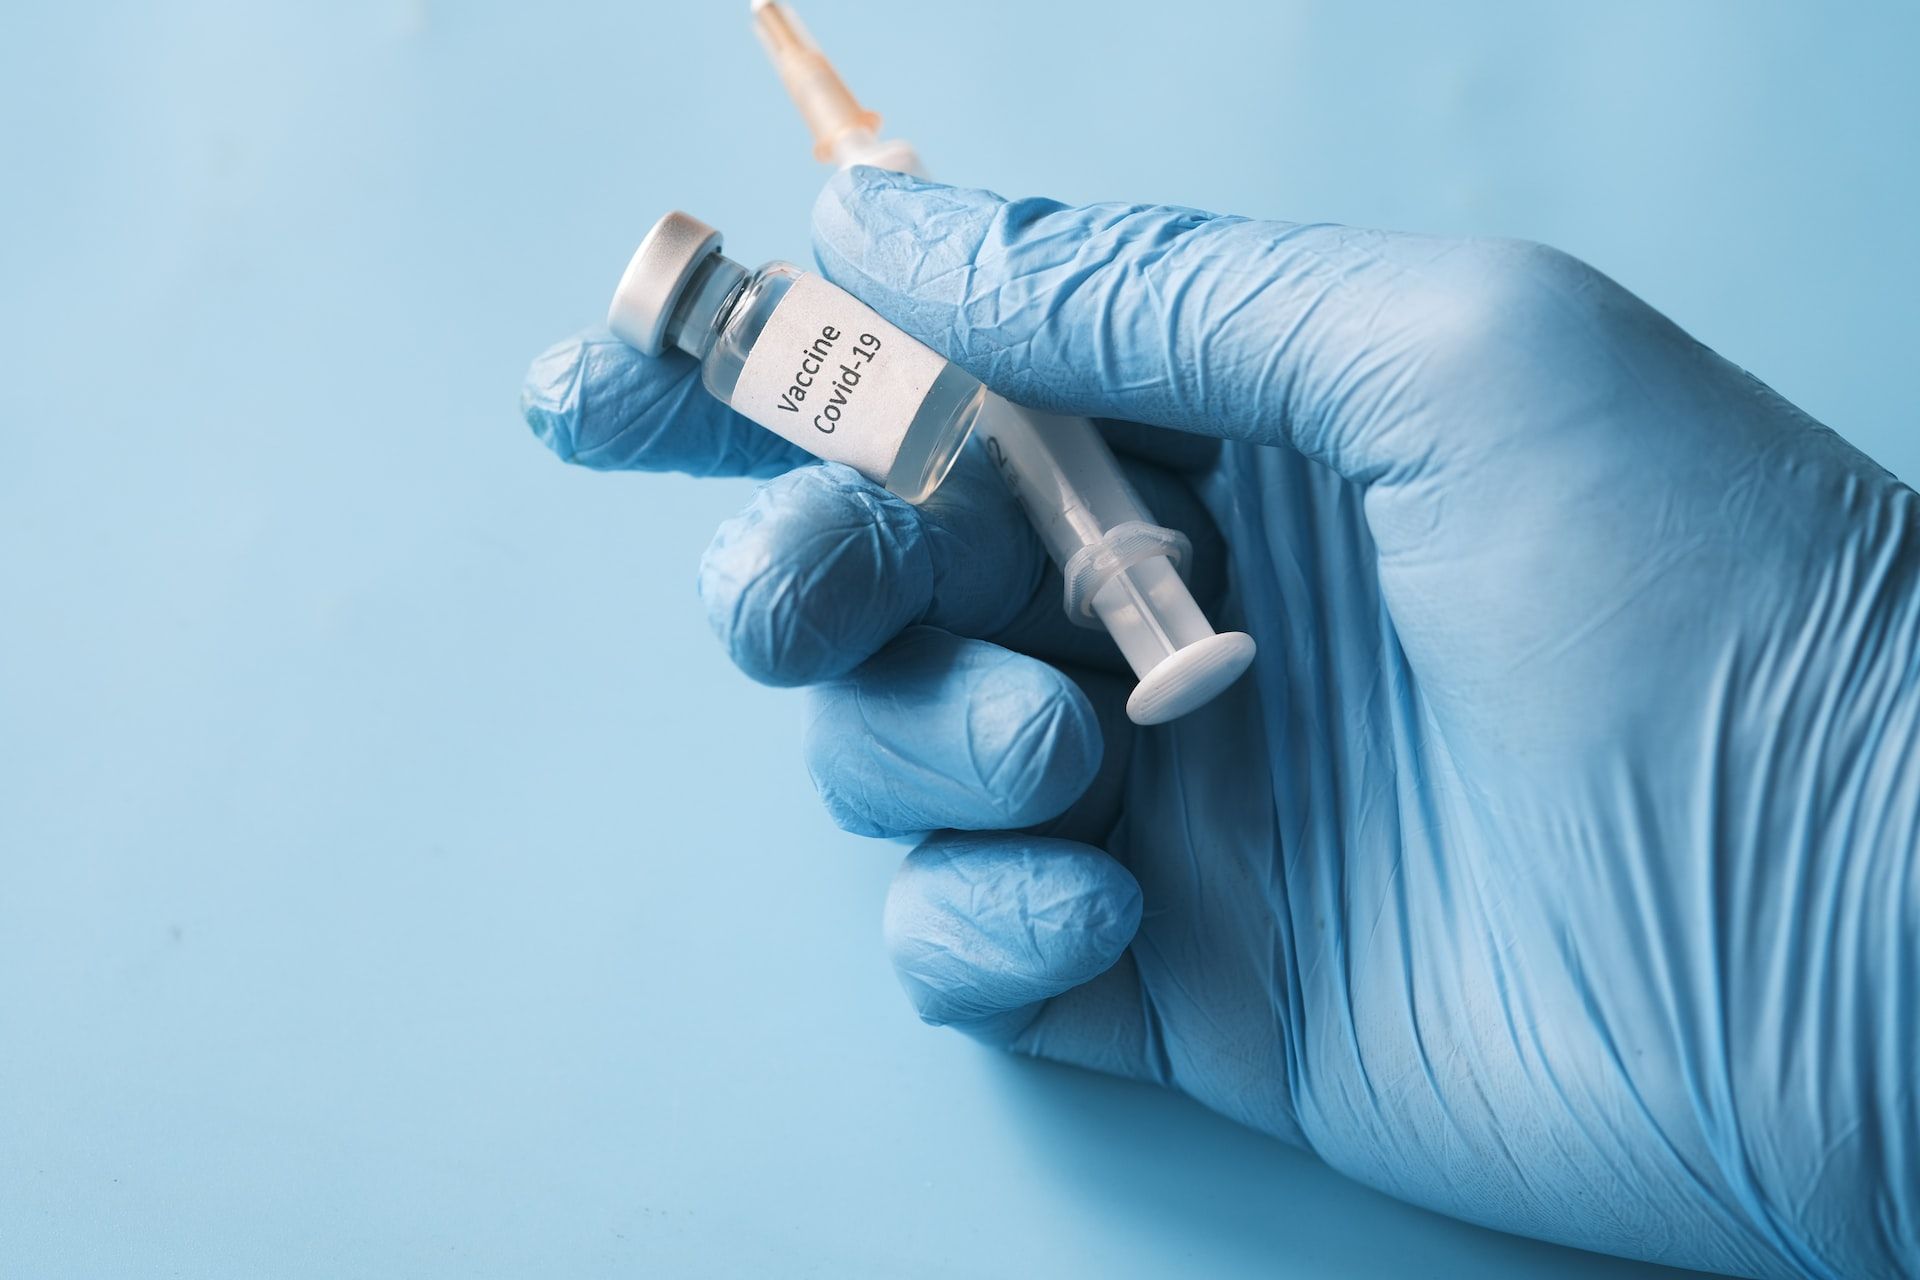 Нова вакцина проти коронавірусу